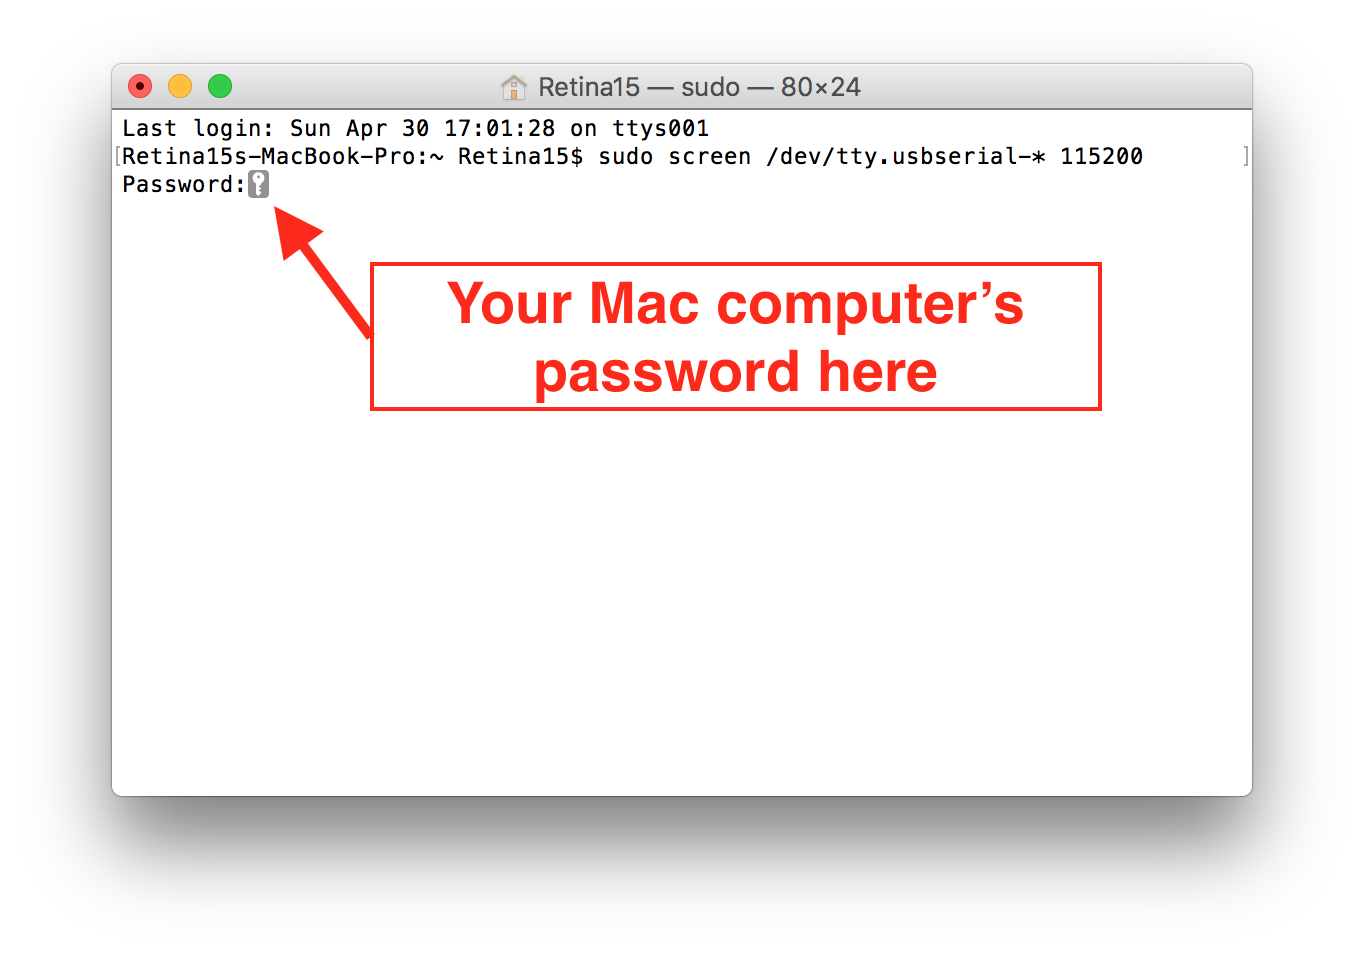 Mac Screen first password